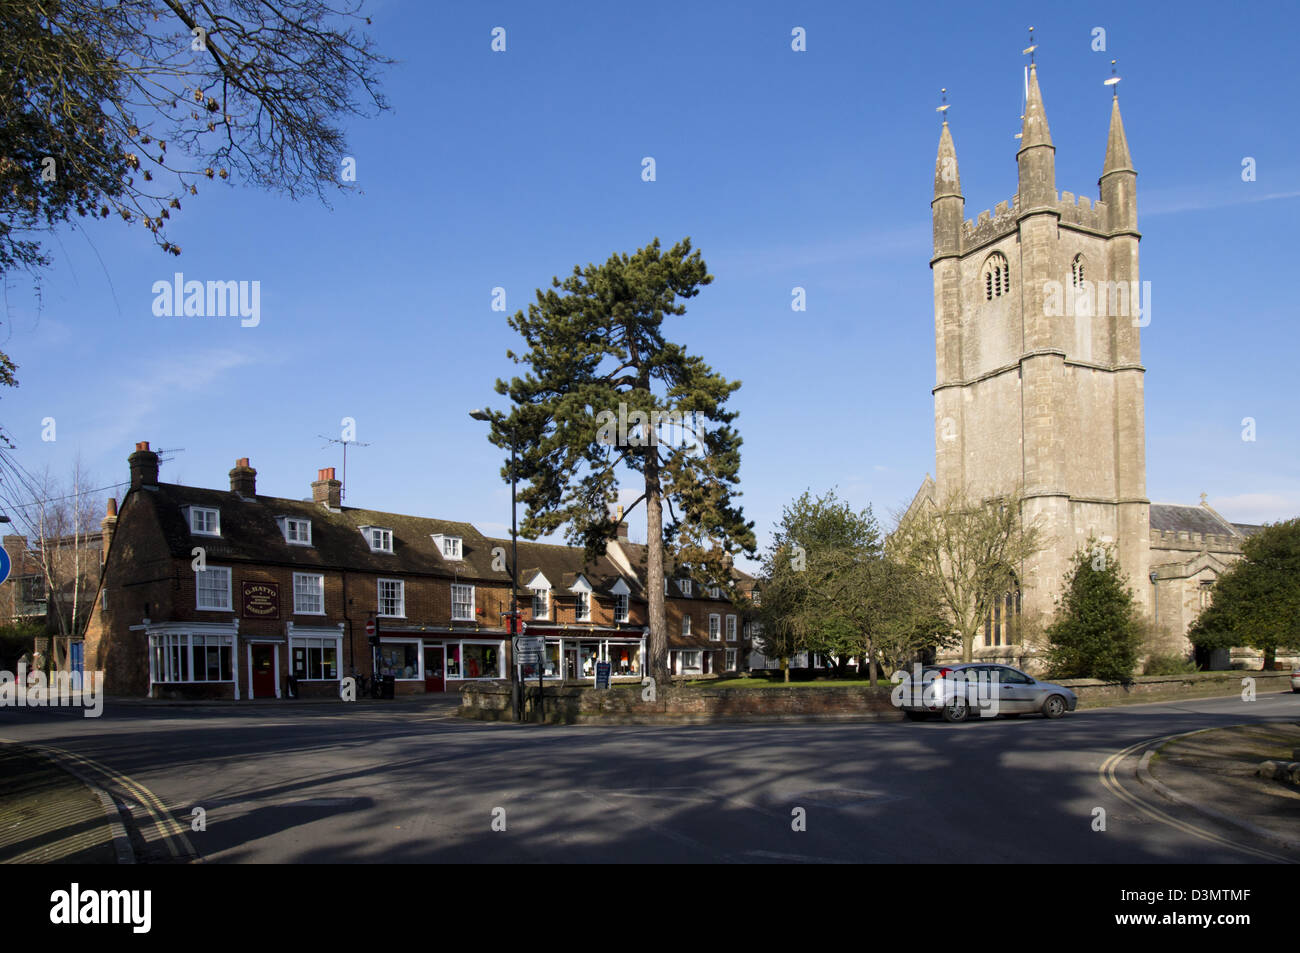 Marlborough est une petite ville de marché dans la campagne du Wiltshire, Angleterre, Royaume-Uni. Banque D'Images